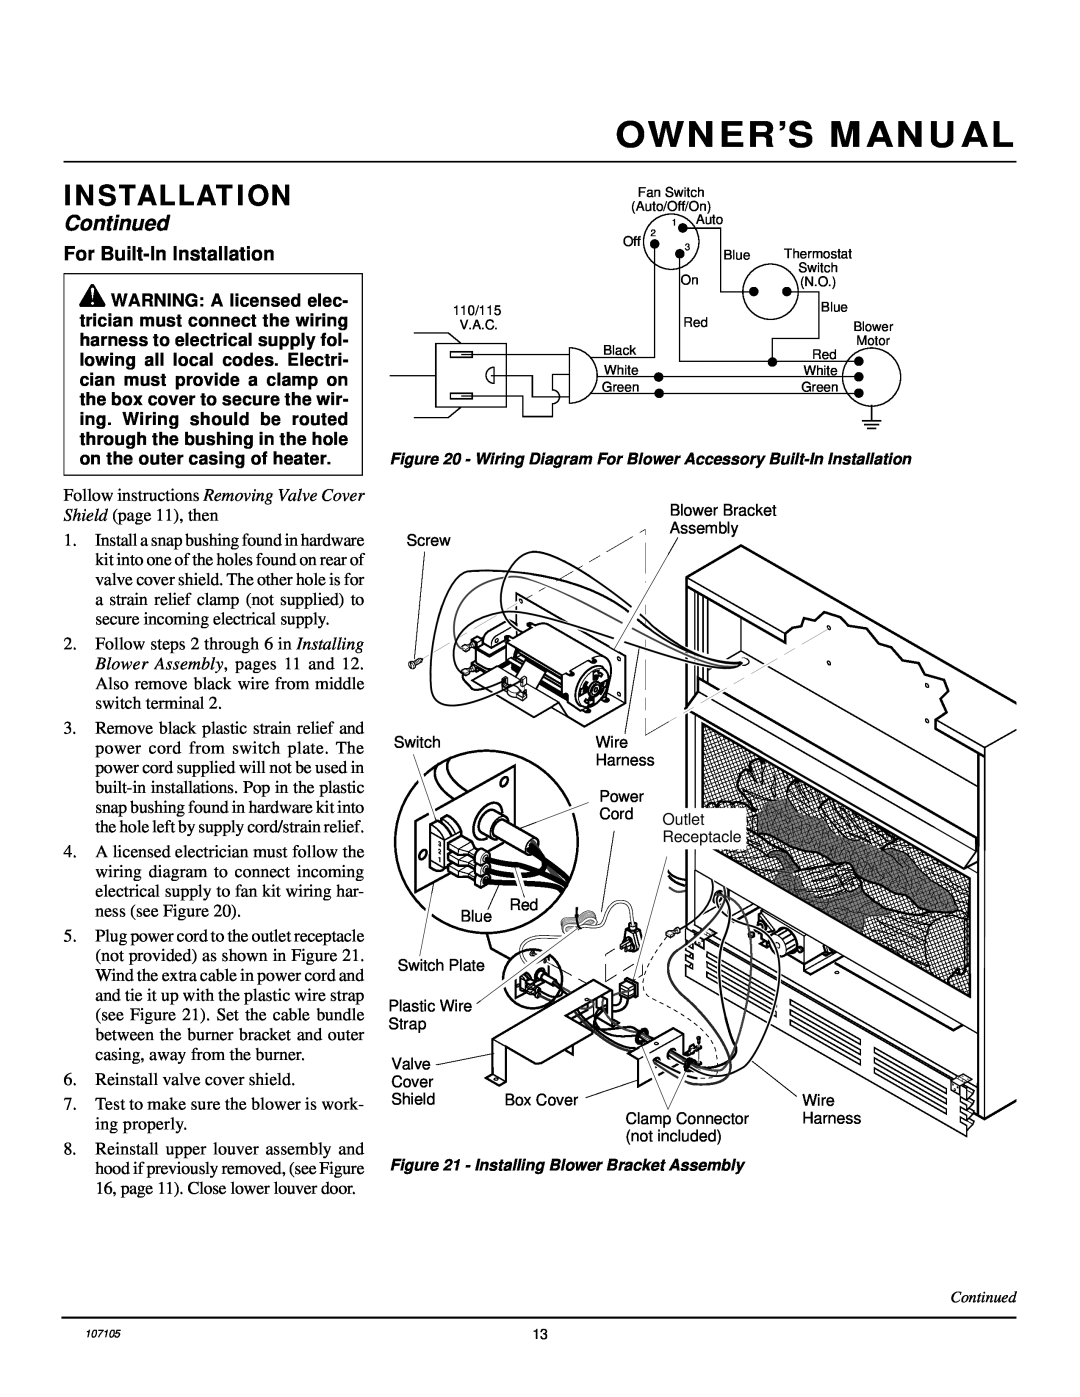 Desa FMH26TN 14 installation manual For Built-InInstallation, Continued 